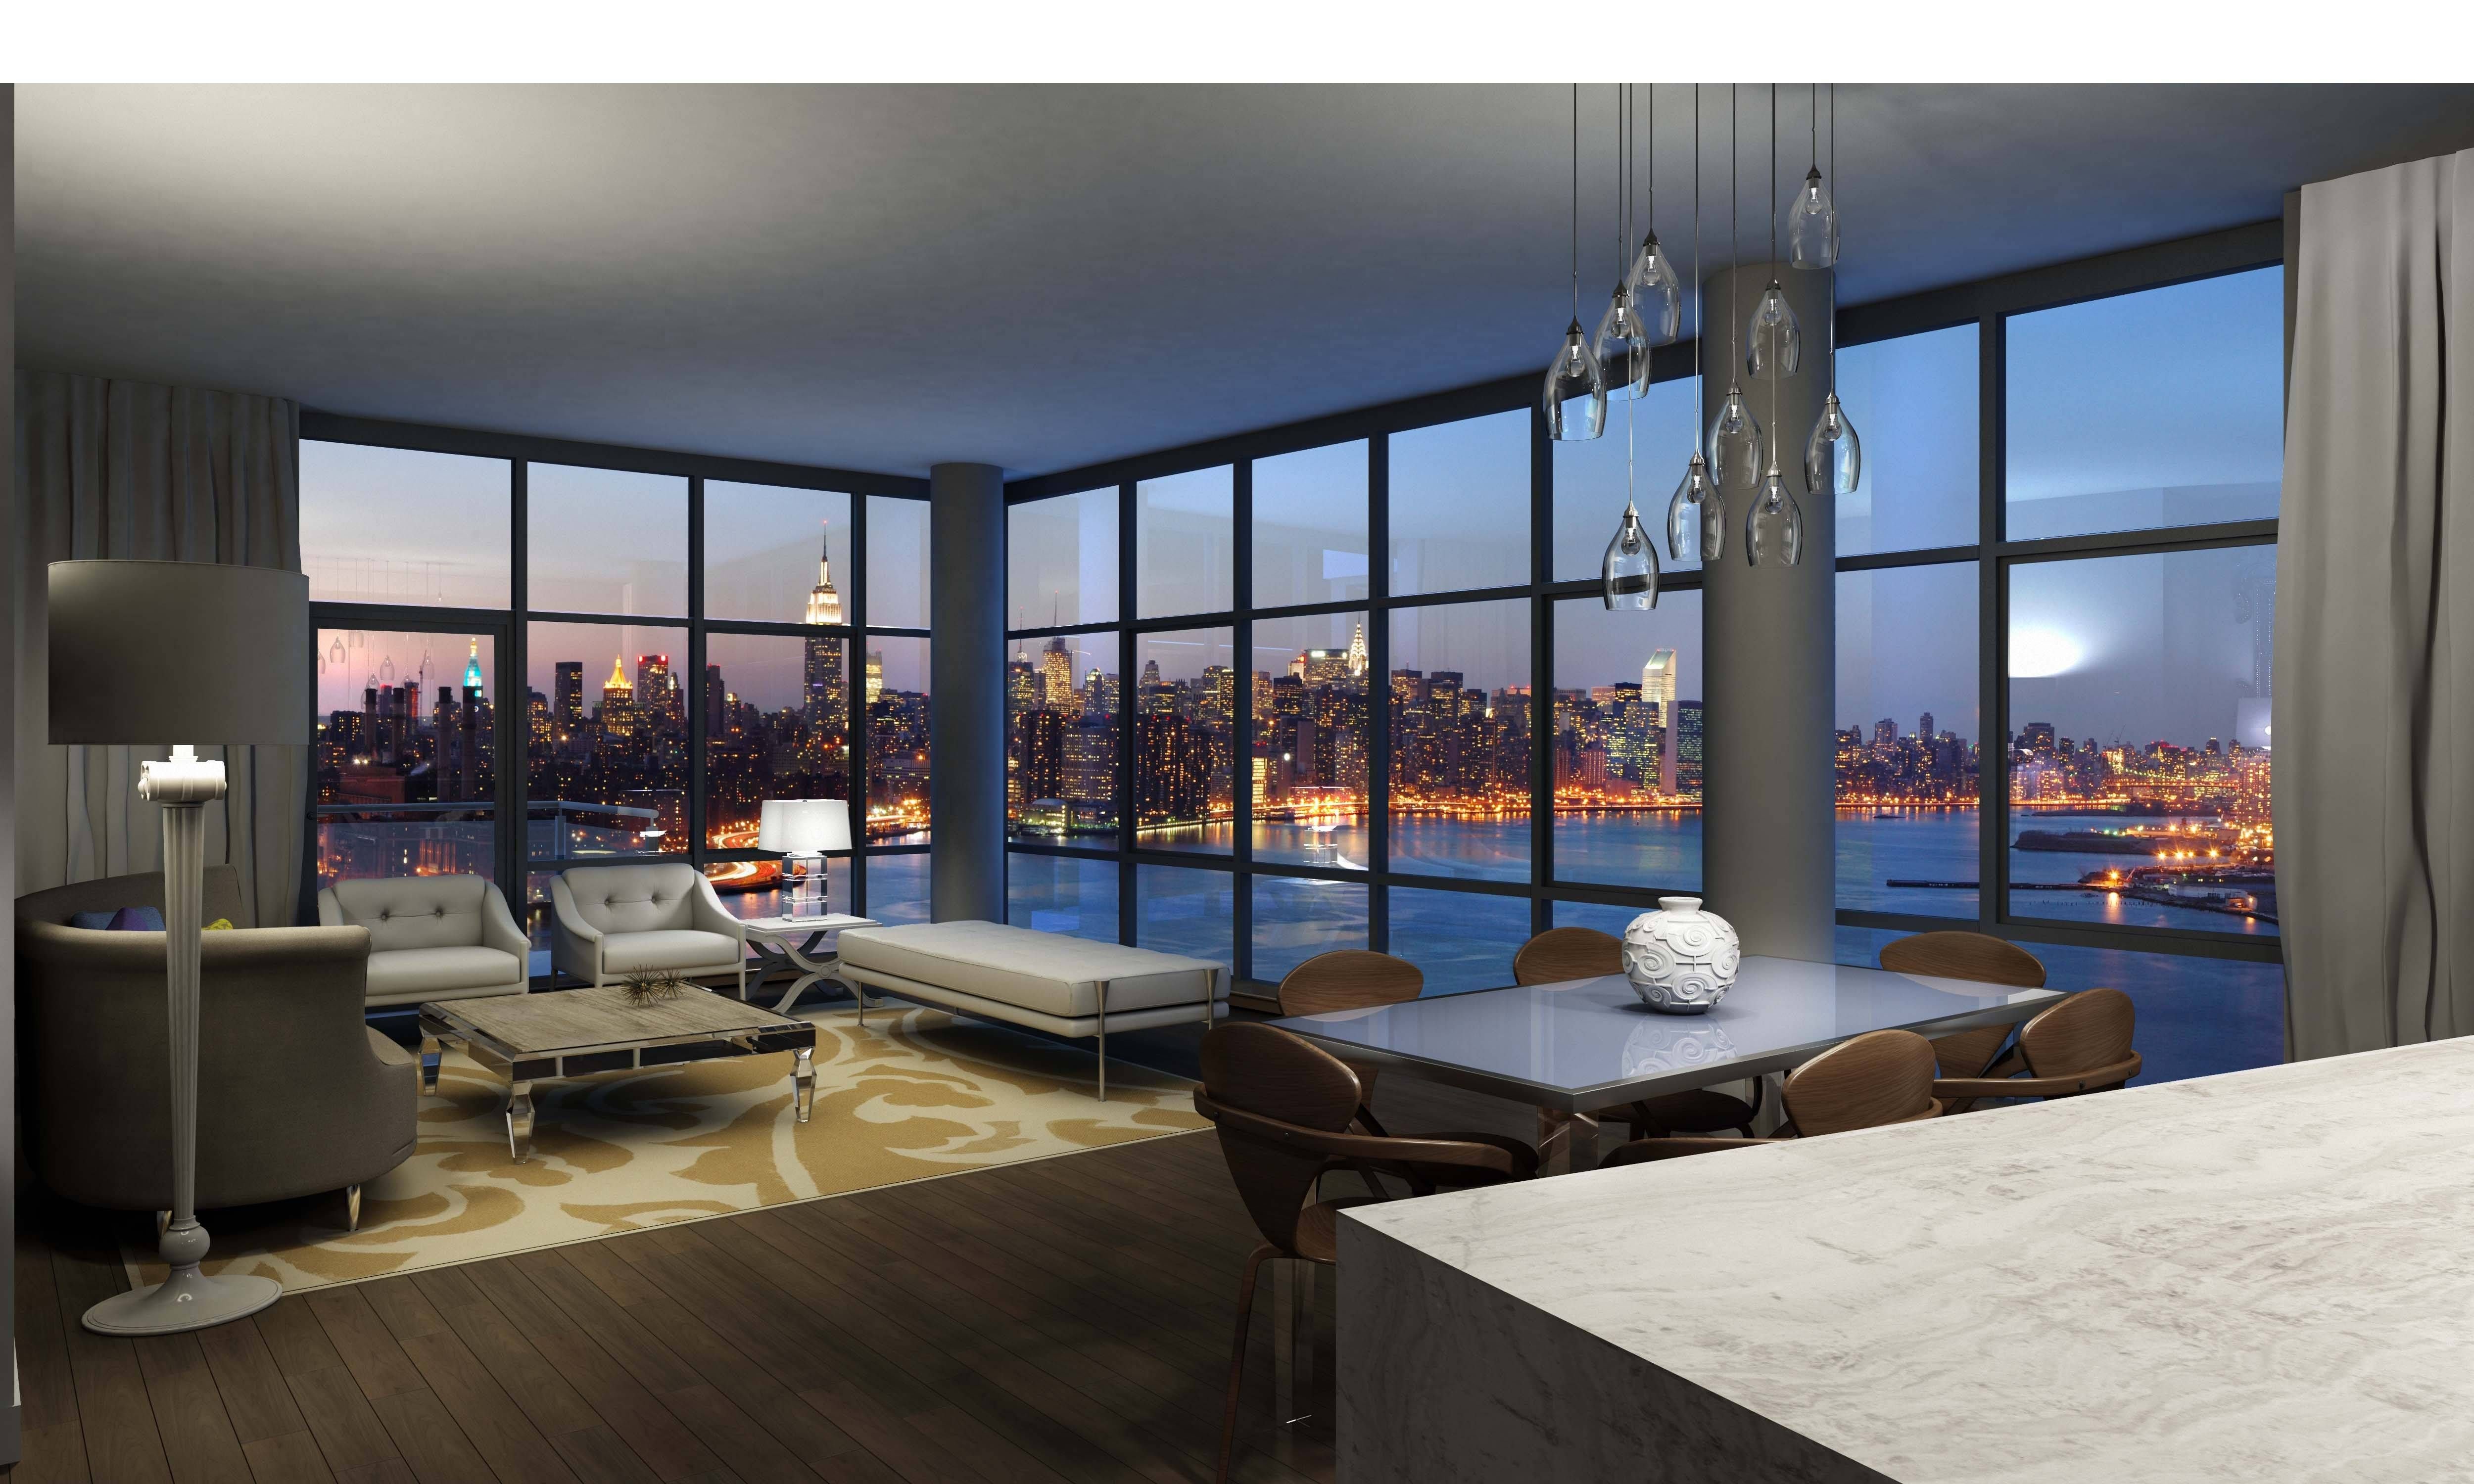 Помещение вид квартира. Скай Ривер панорамные окна. Панорамные окна Нью Йорк. ЖК Аэробус пентхаус.